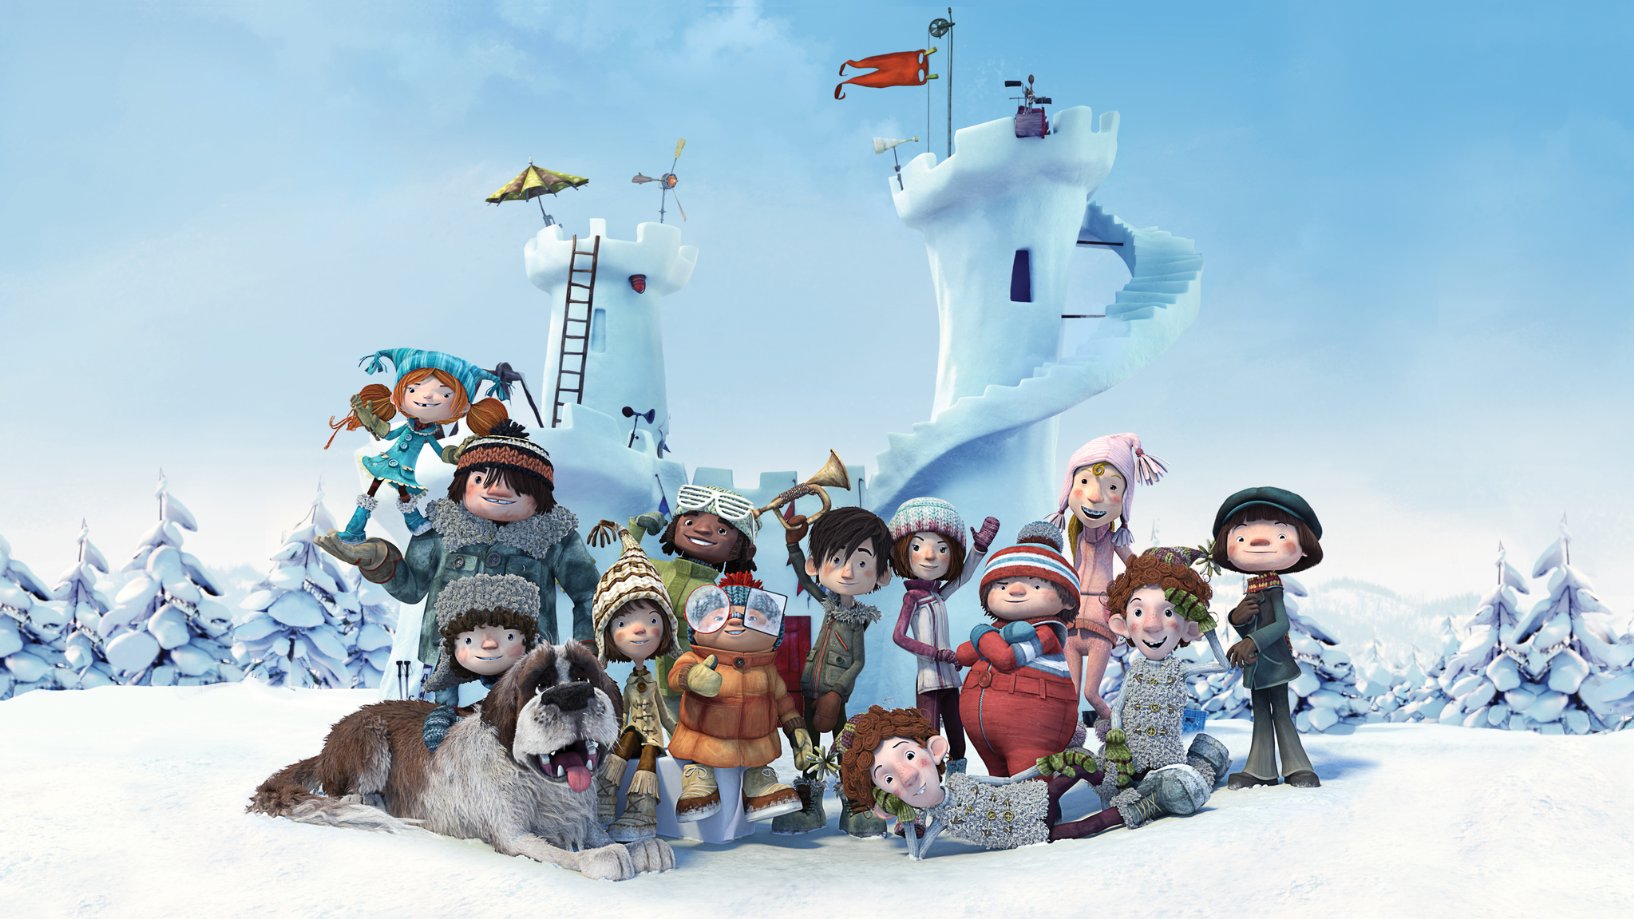 دانلود دوبله فارسی انیمیشن روز برفی Snowtime! 2015 با لینک مستقیم